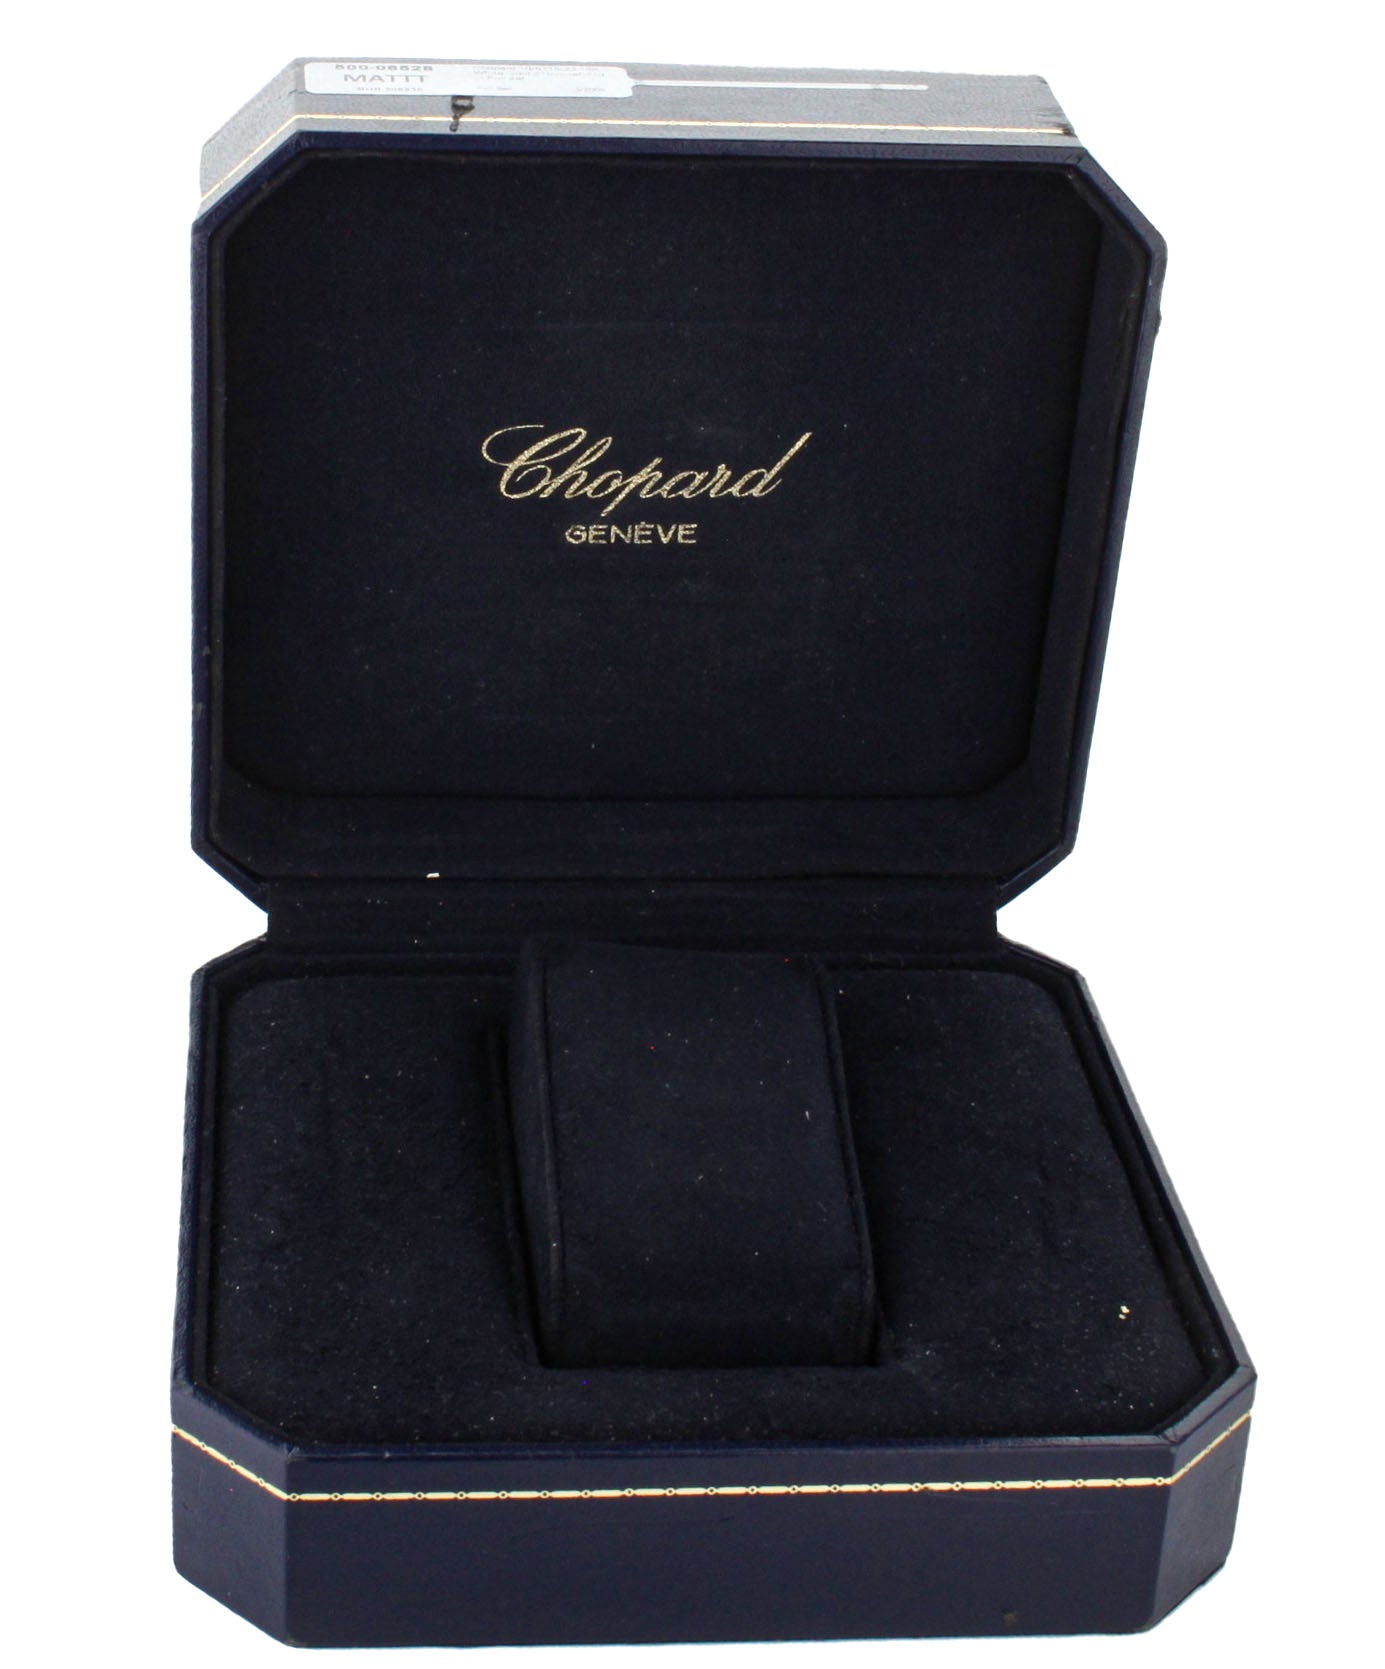 Chopard Classic Diamond White Gold White Dial Quartz 21mm 10/6115-23 Full set